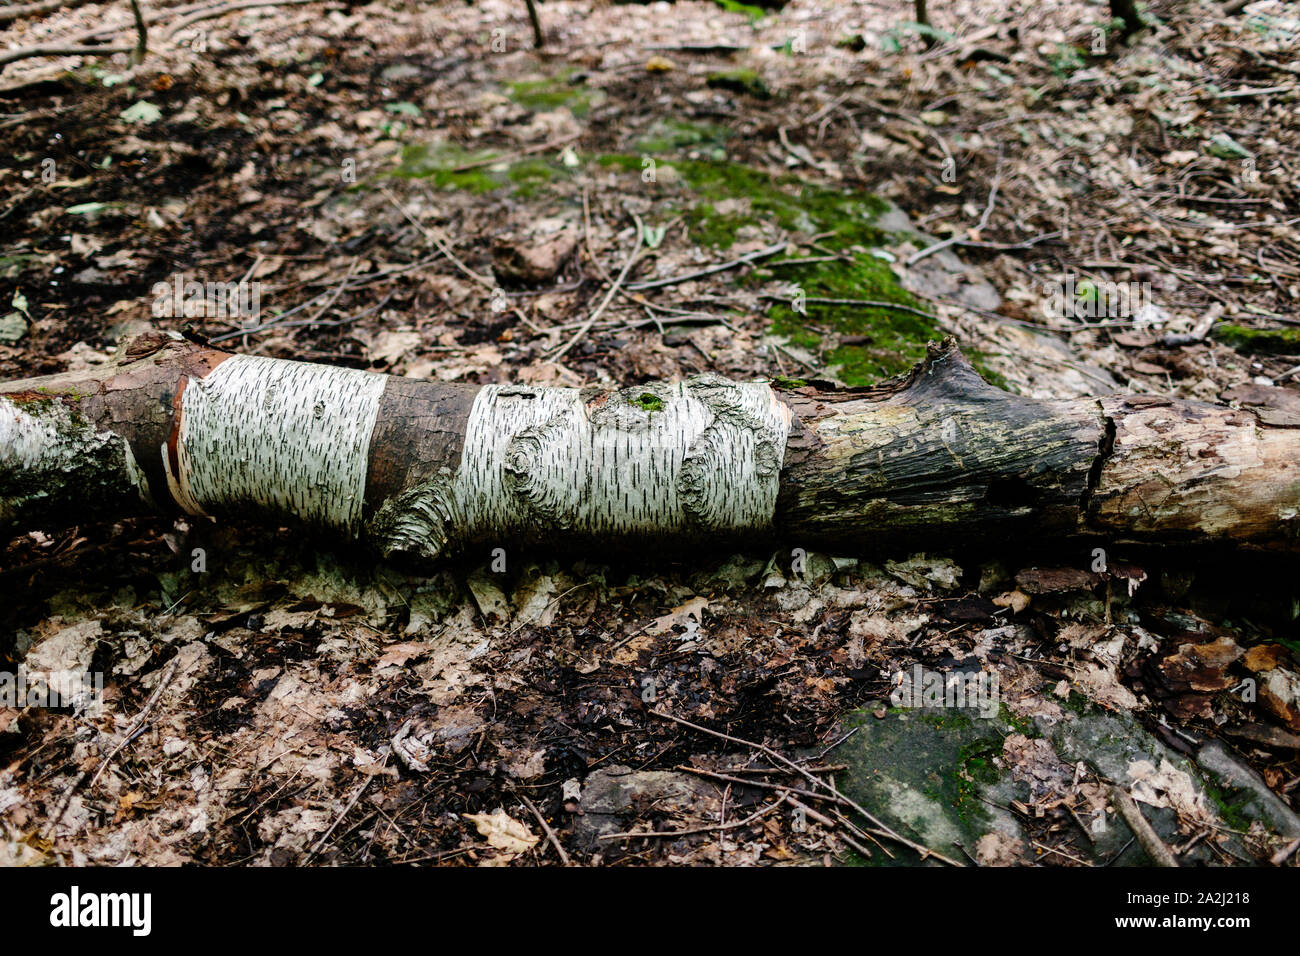 Eine alte rostige Log auf dem Boden liegt. Der Boden ist mit trockenen Blättern gefüllt, es gibt Moos auf den Steinen. Stockfoto